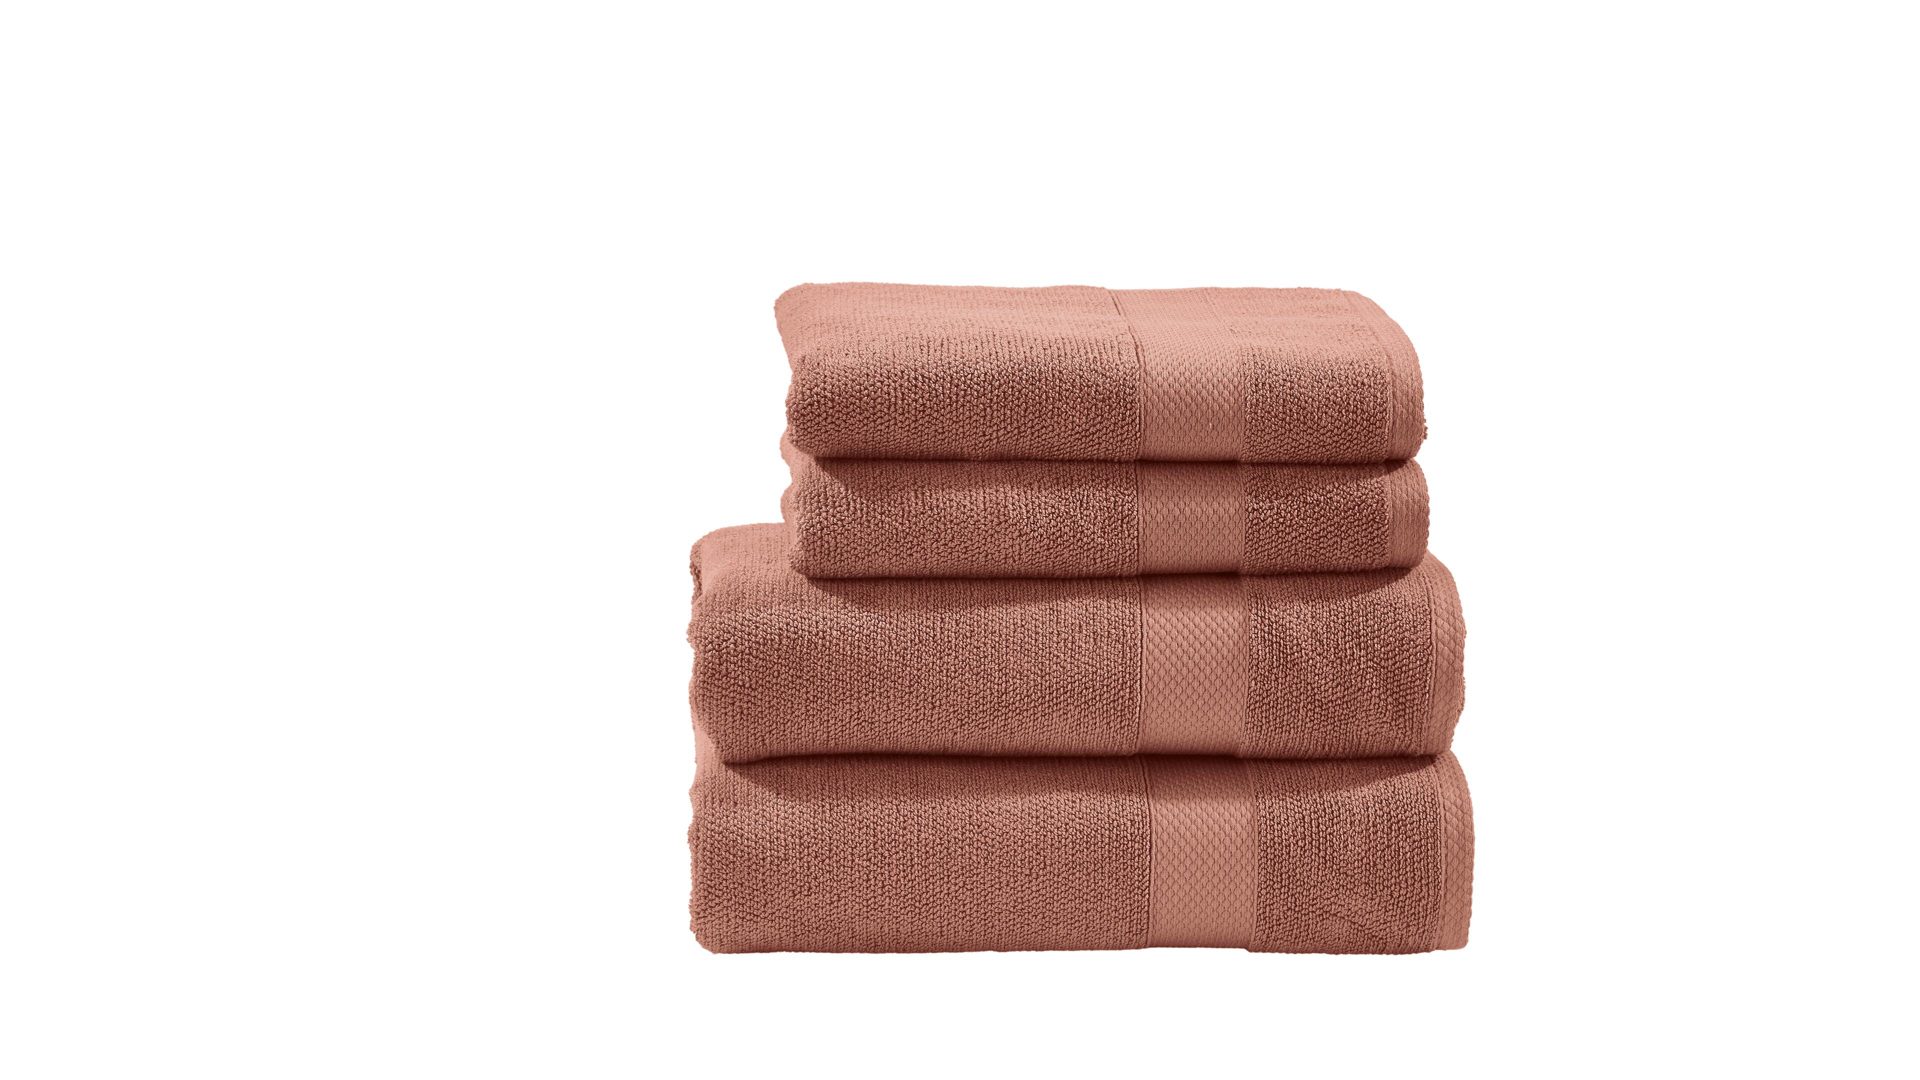 Handtuch-Set Done® be different aus Stoff in Orange DONE® Handtuch-Set Deluxe - Heimtextilien wüstensandfarbene Baumwolle – vierteilig